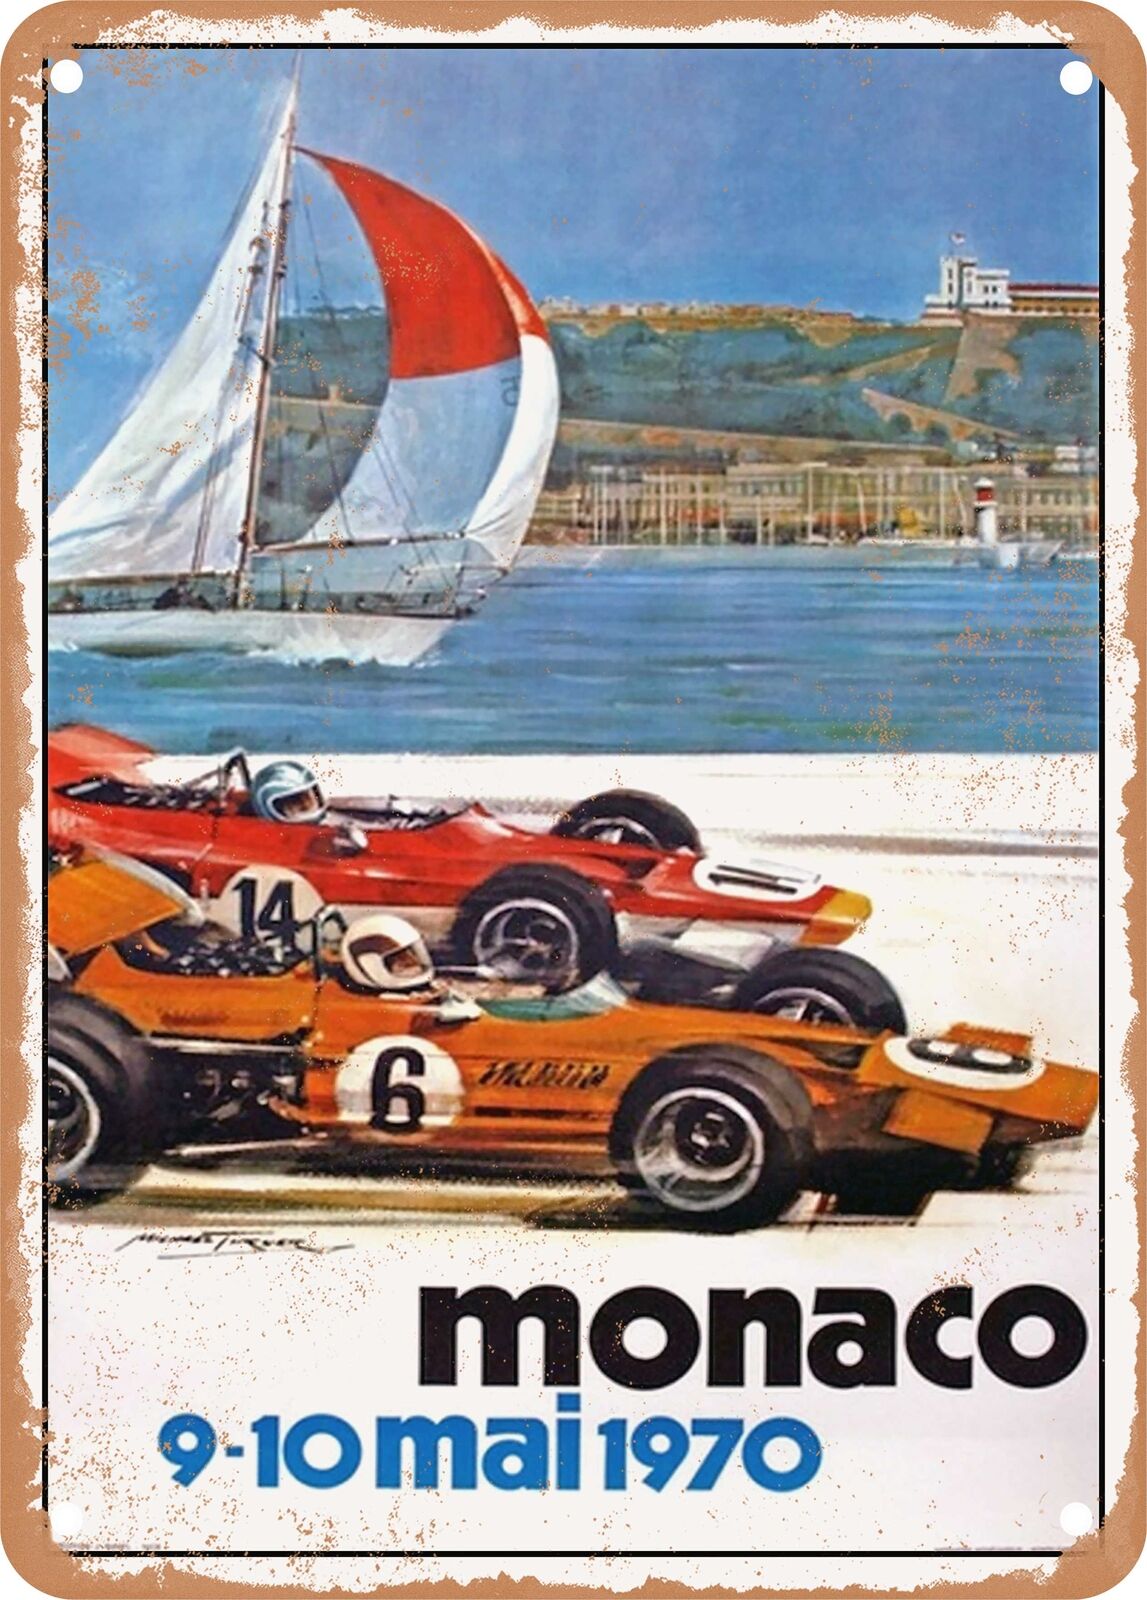 METAL SIGN - 1970 Monaco Vintage Ad